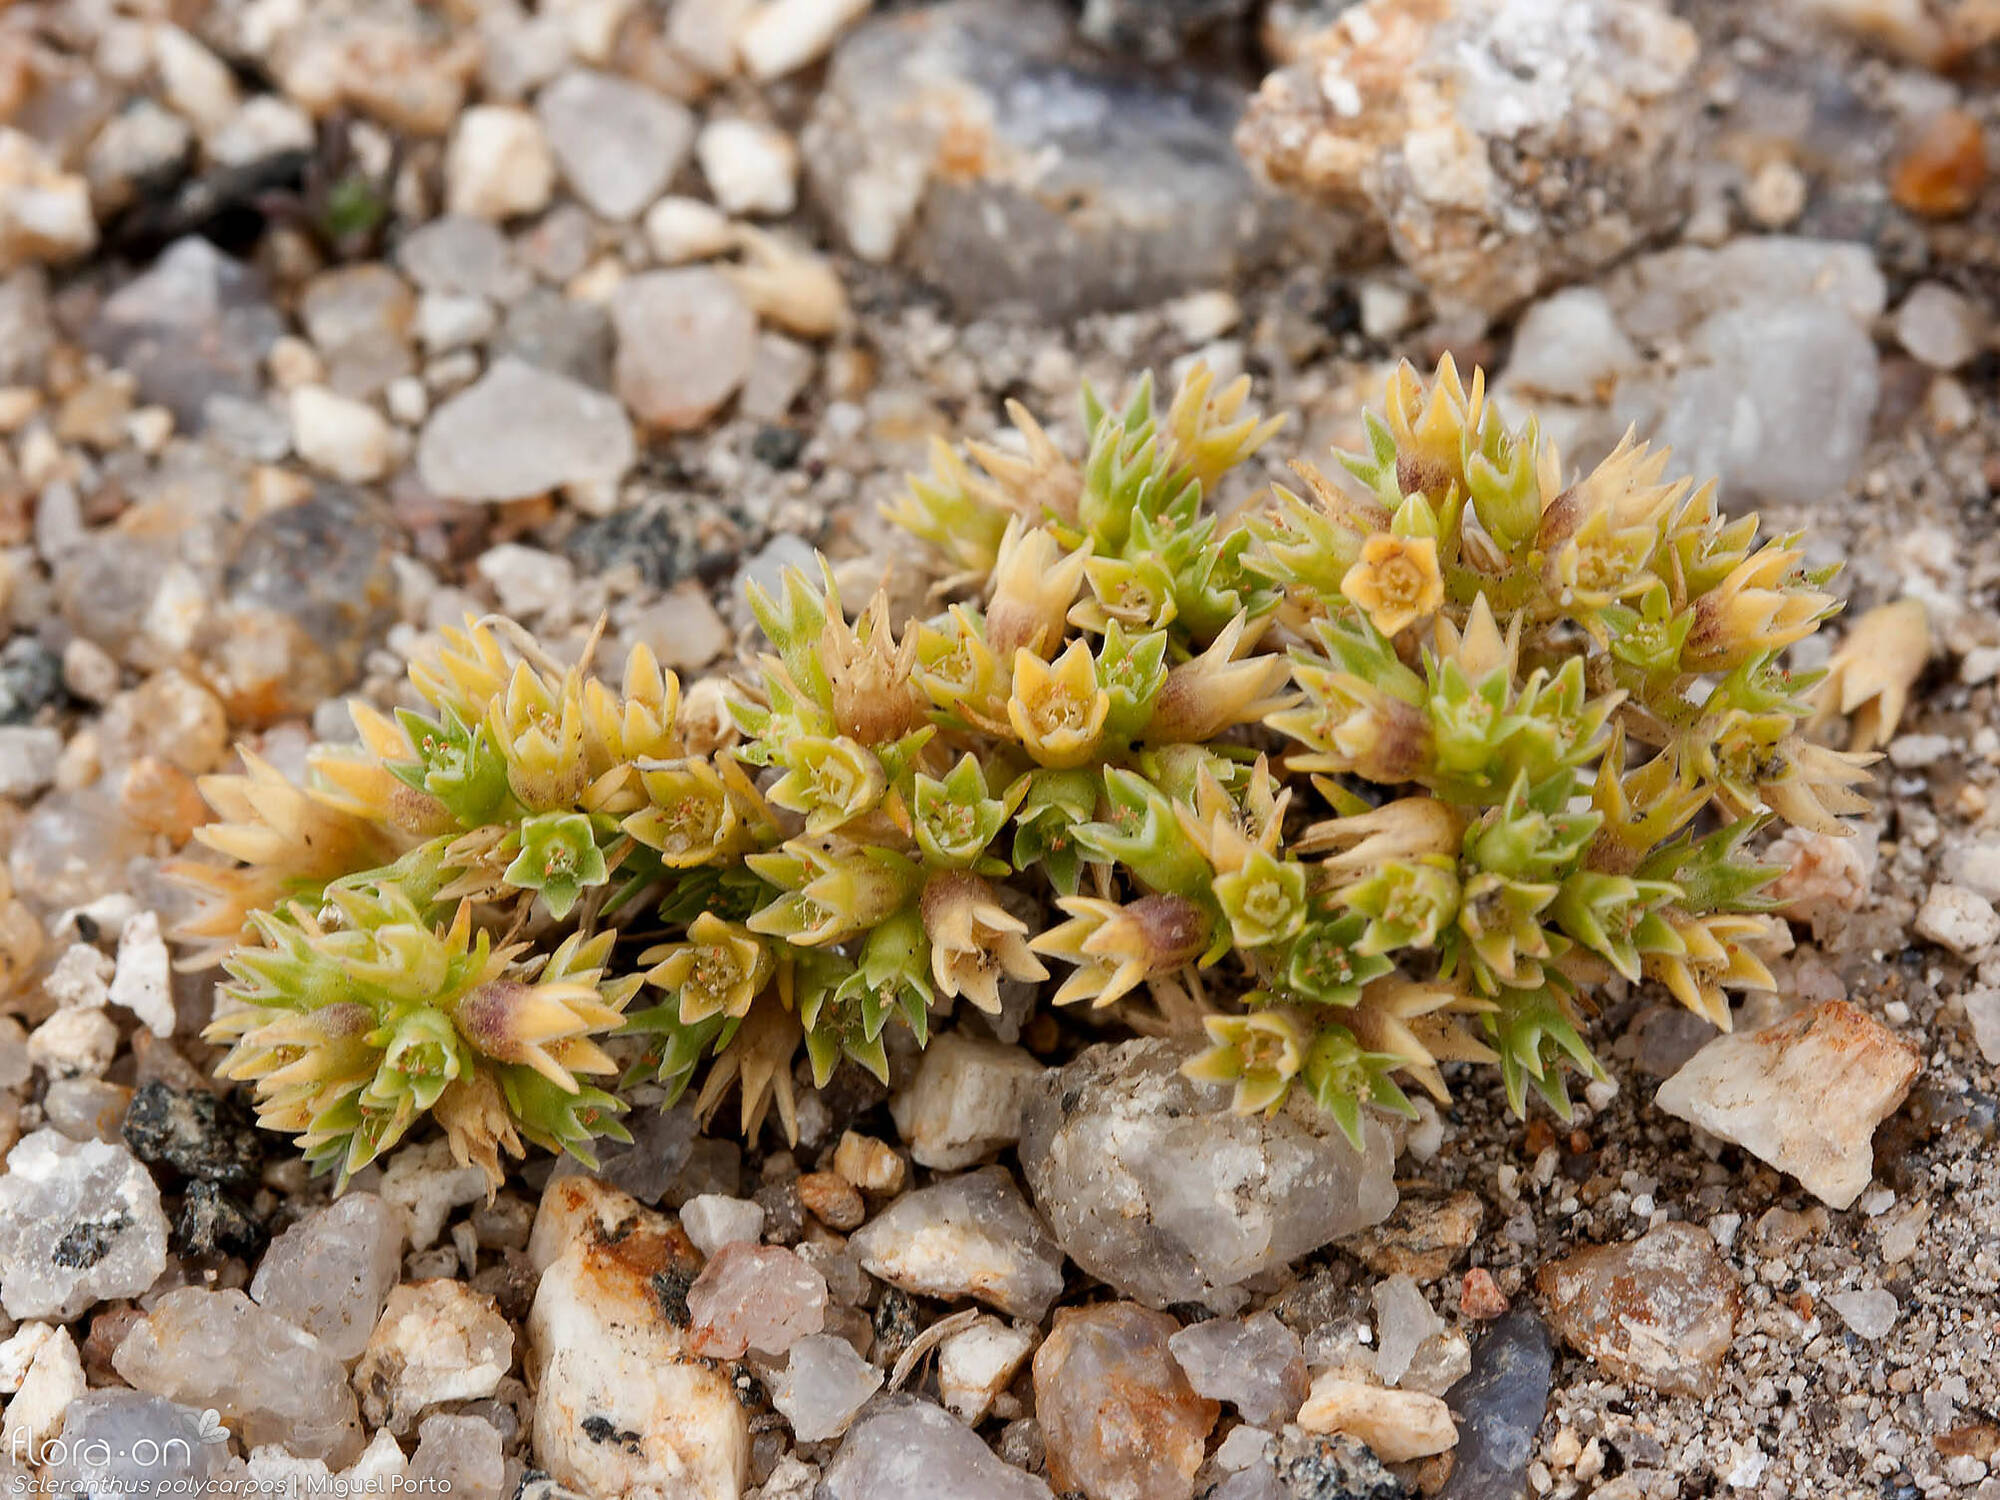 Scleranthus polycarpos - Hábito | Miguel Porto; CC BY-NC 4.0